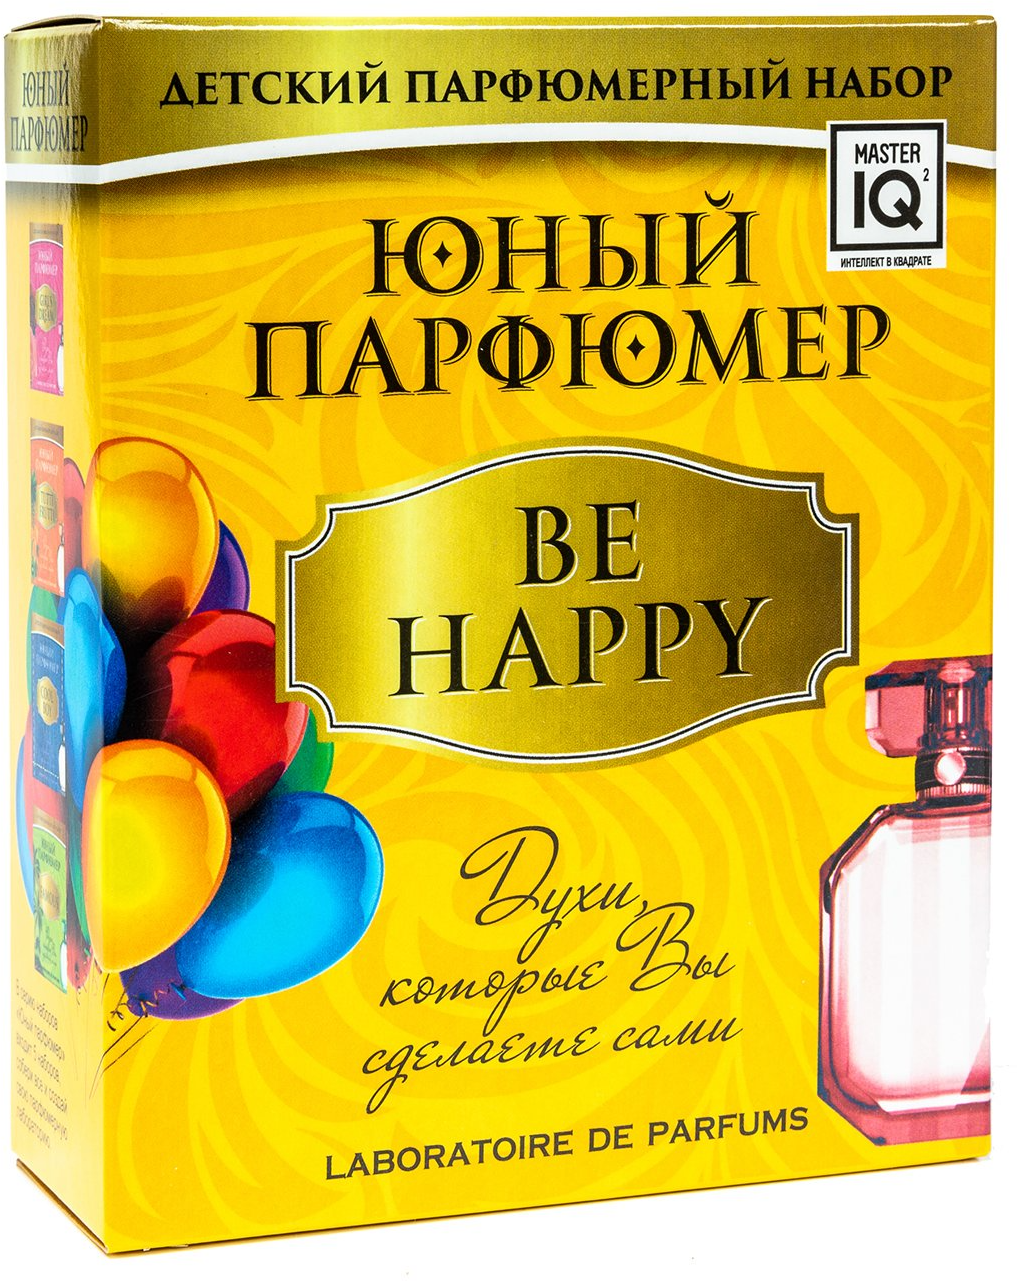 Набор "Юный Парфюмер. BE HAPPY" (330) Инновации для детей - фото №3